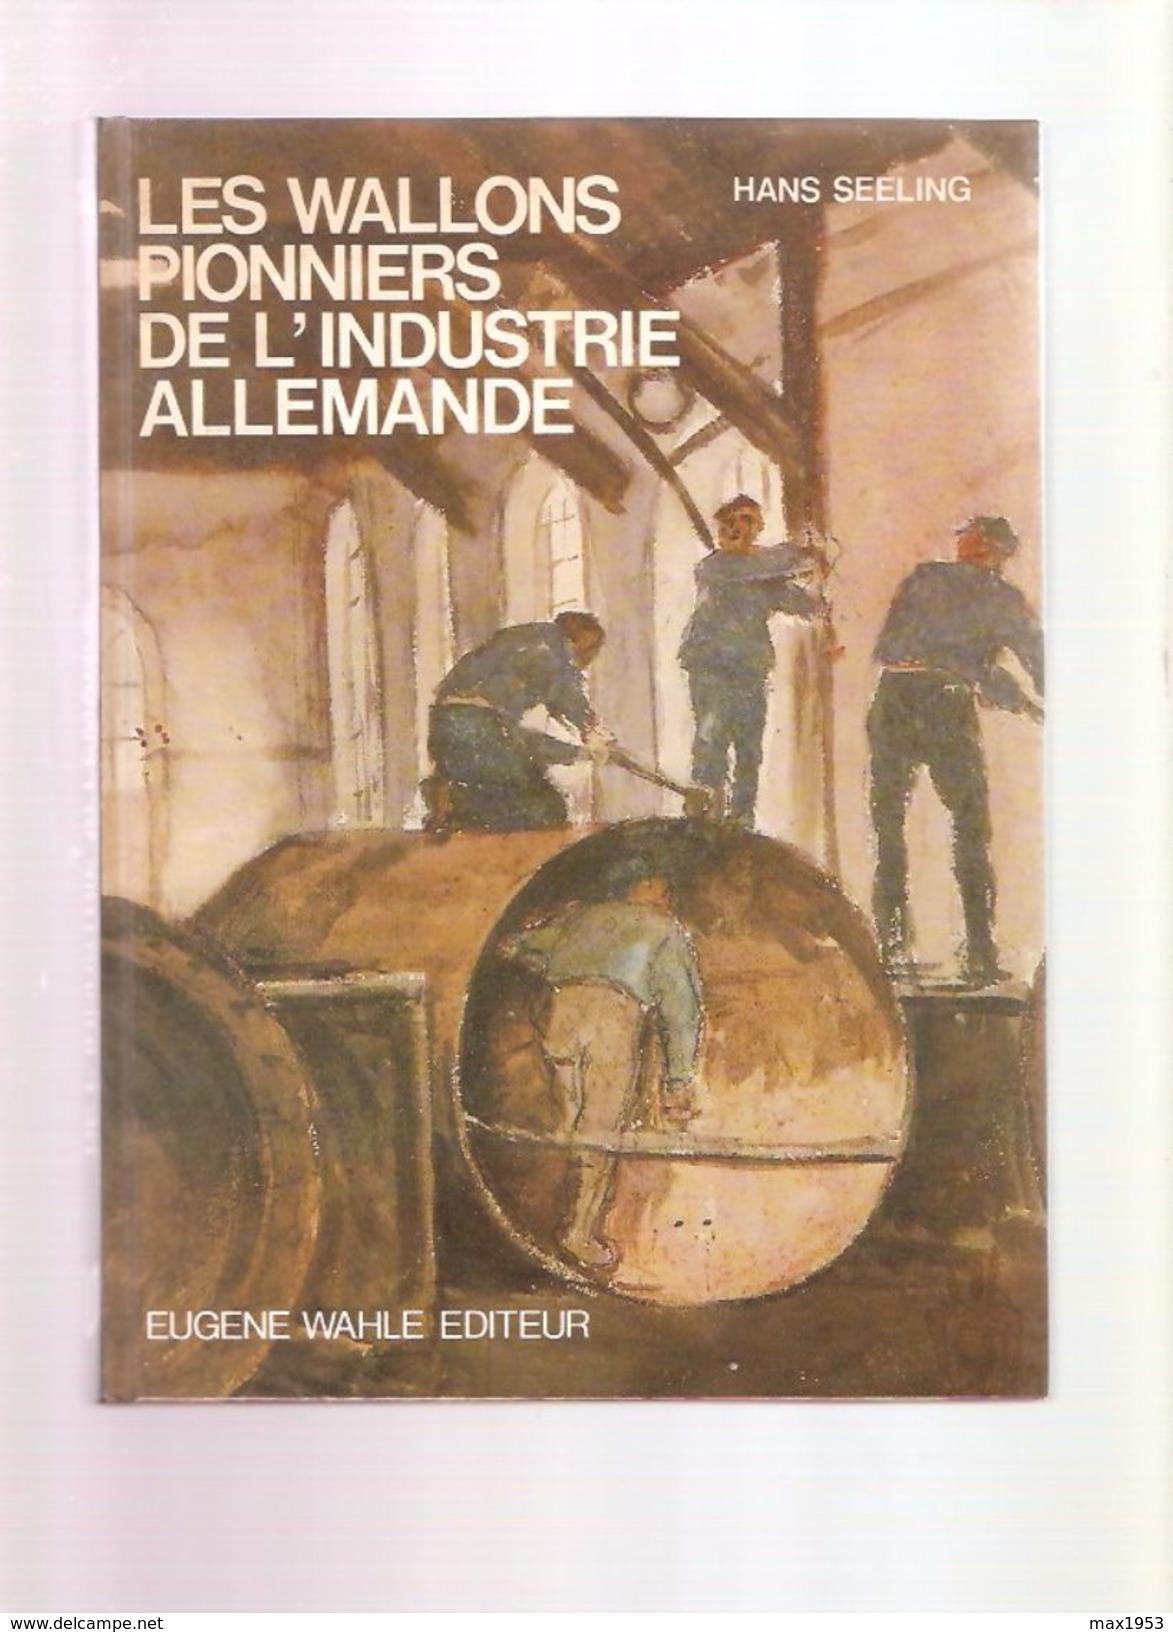 Hans SEELING - LES WALLONS PIONNIERS DE L'INDUSTRIE ALLEMANDE - Eugène Wahle Editeur, Liège 1983 - Belgium